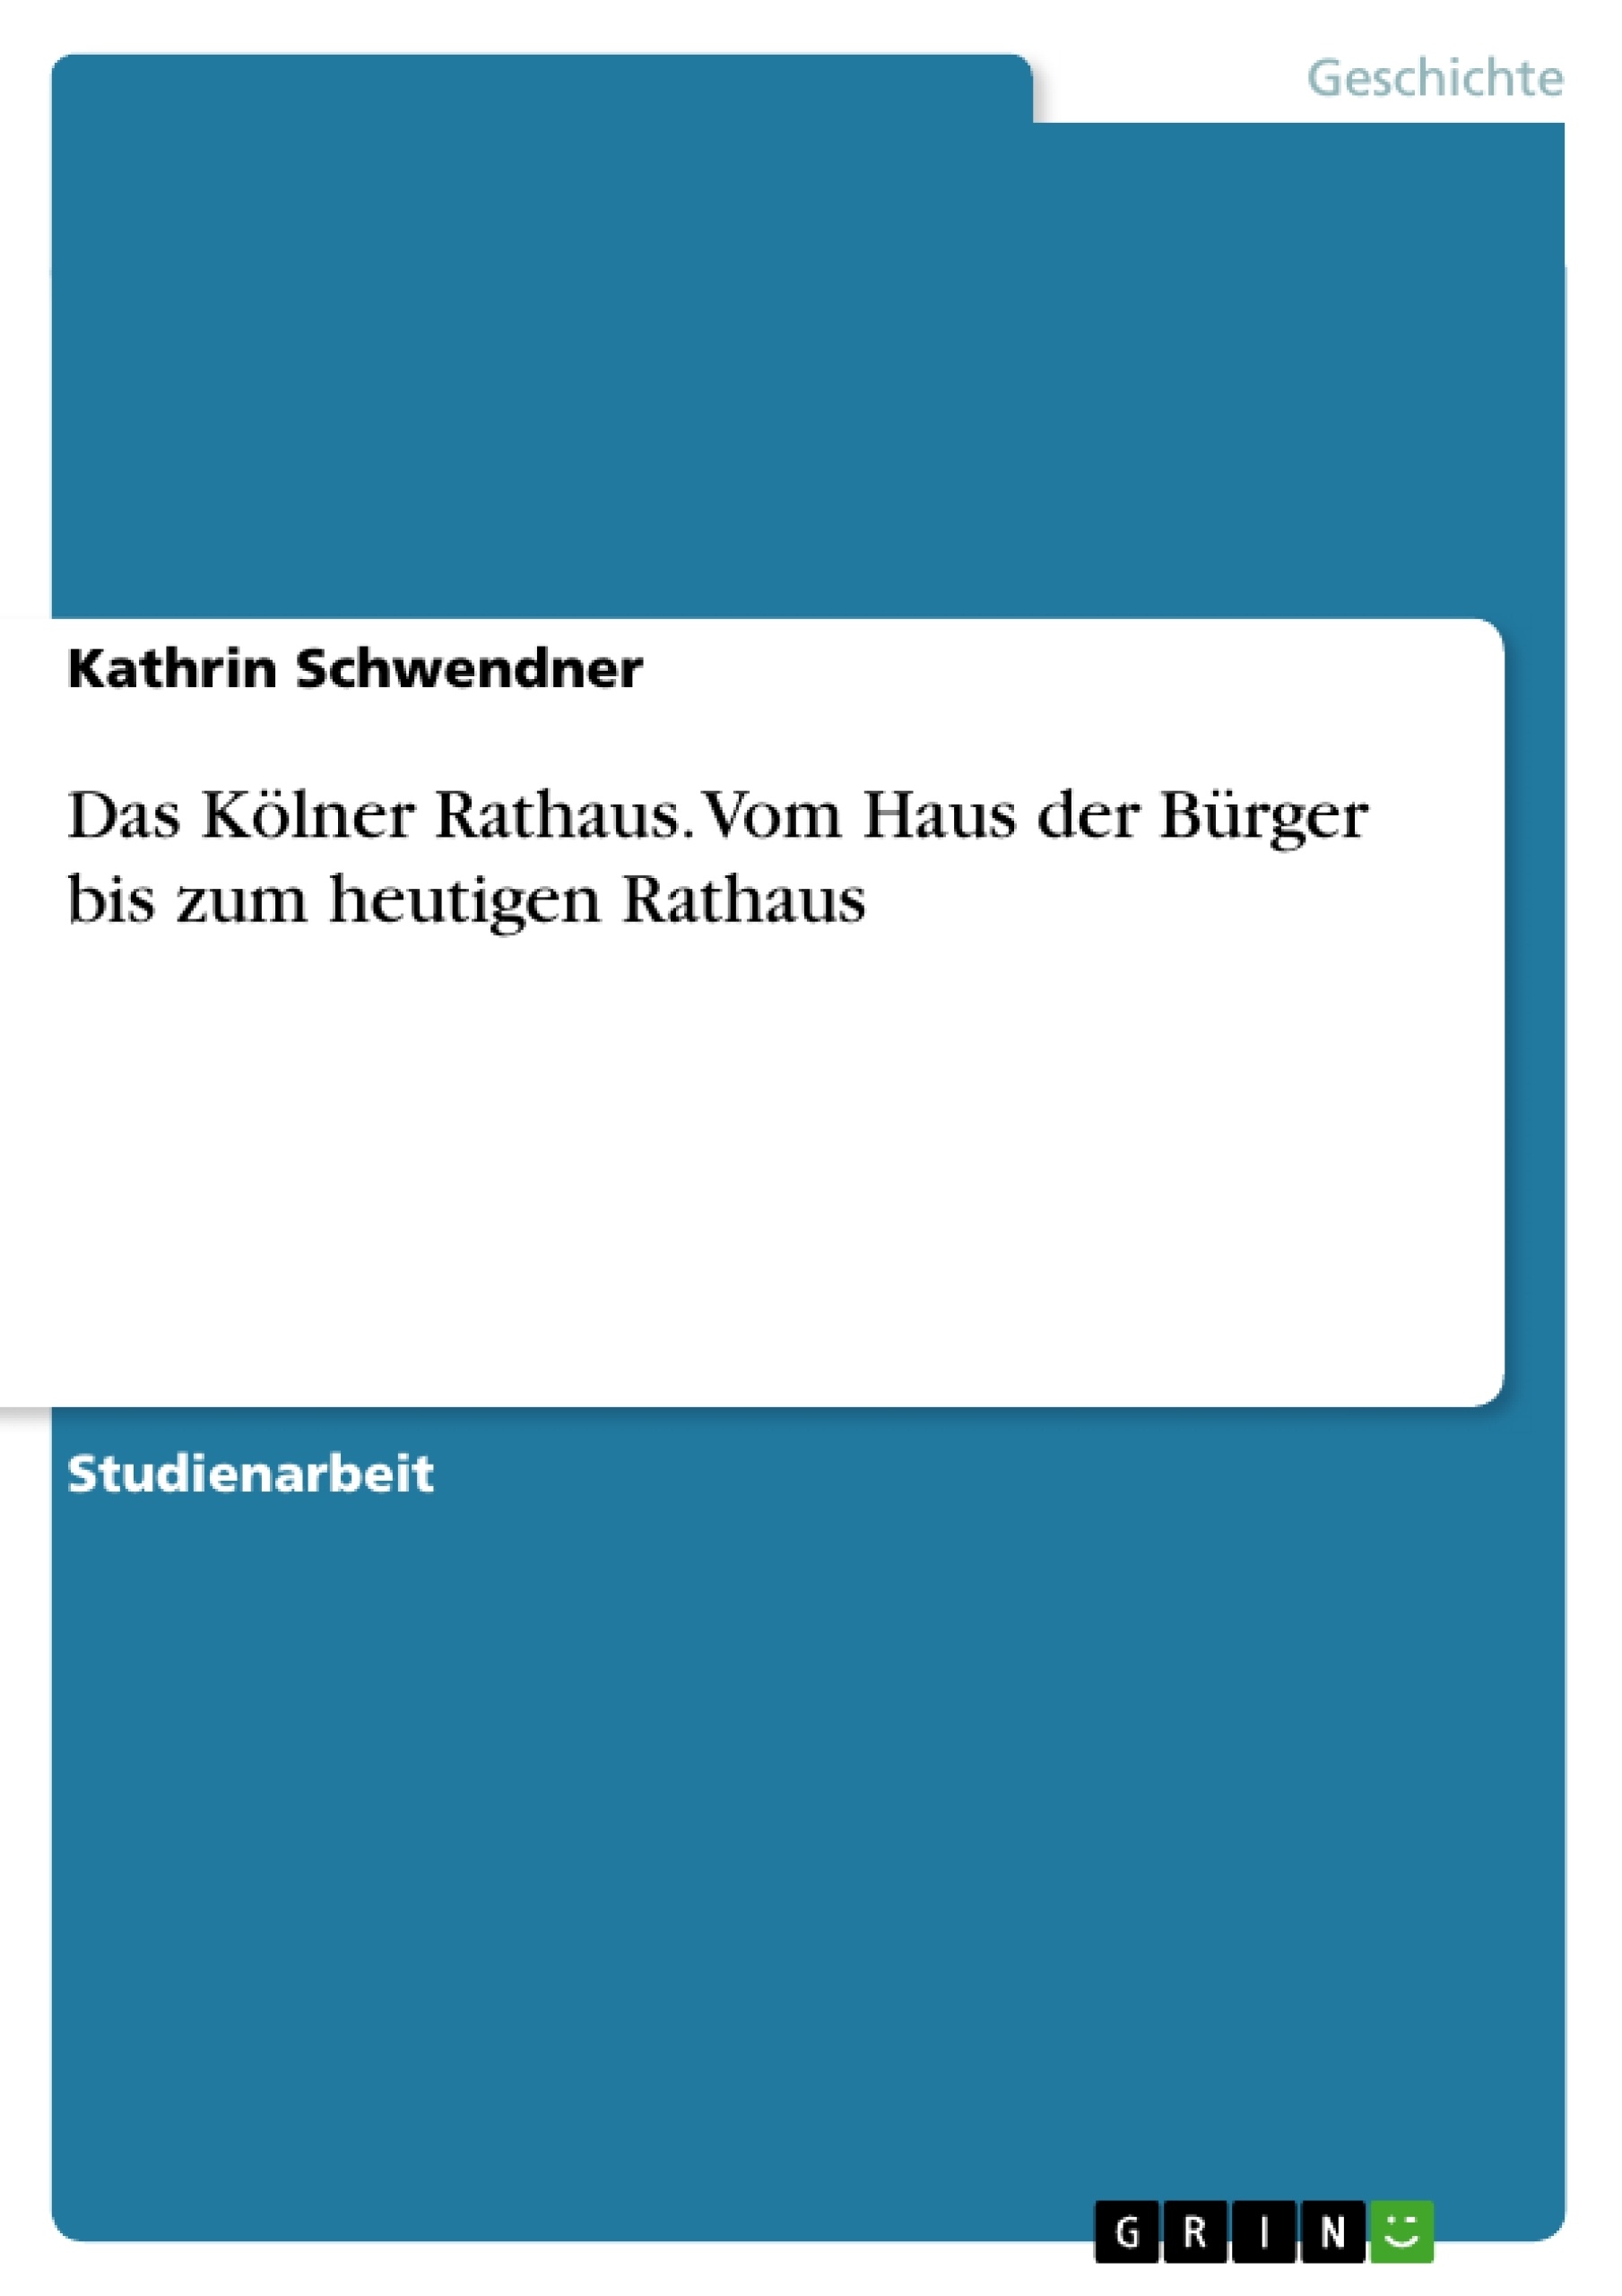 Titre: Das Kölner Rathaus. Vom Haus der Bürger bis zum heutigen Rathaus